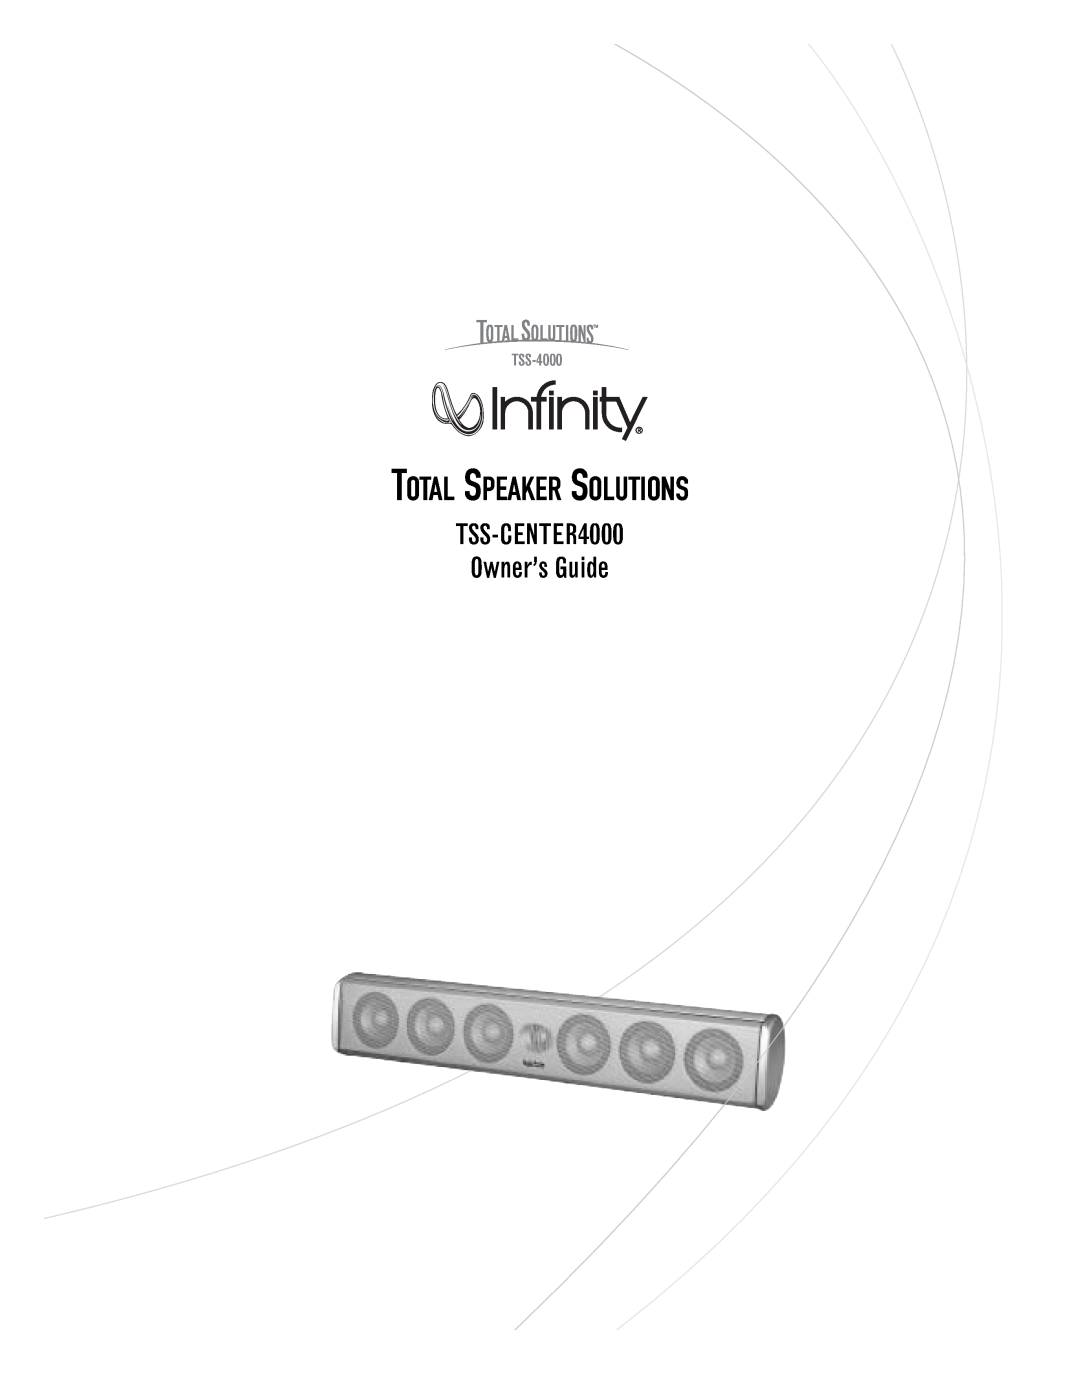 Infinity manual Total Speaker Solutions, TSS-CENTER4000 Owner’s Guide, TSS-4000 